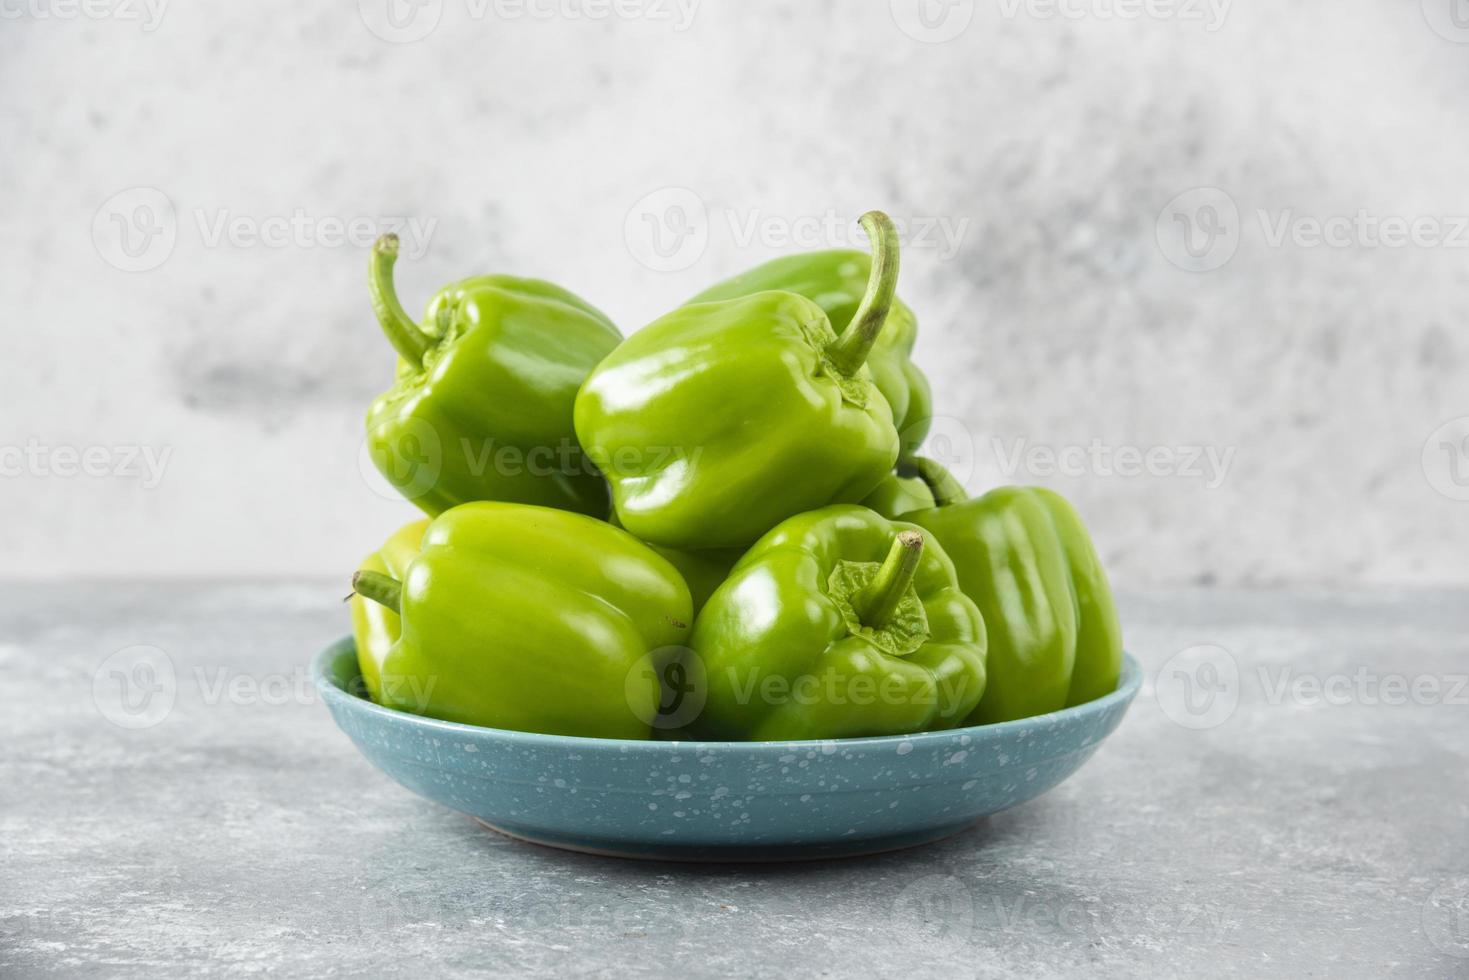 frische grüne Paprika auf einem blauen Teller auf einem Steintisch foto